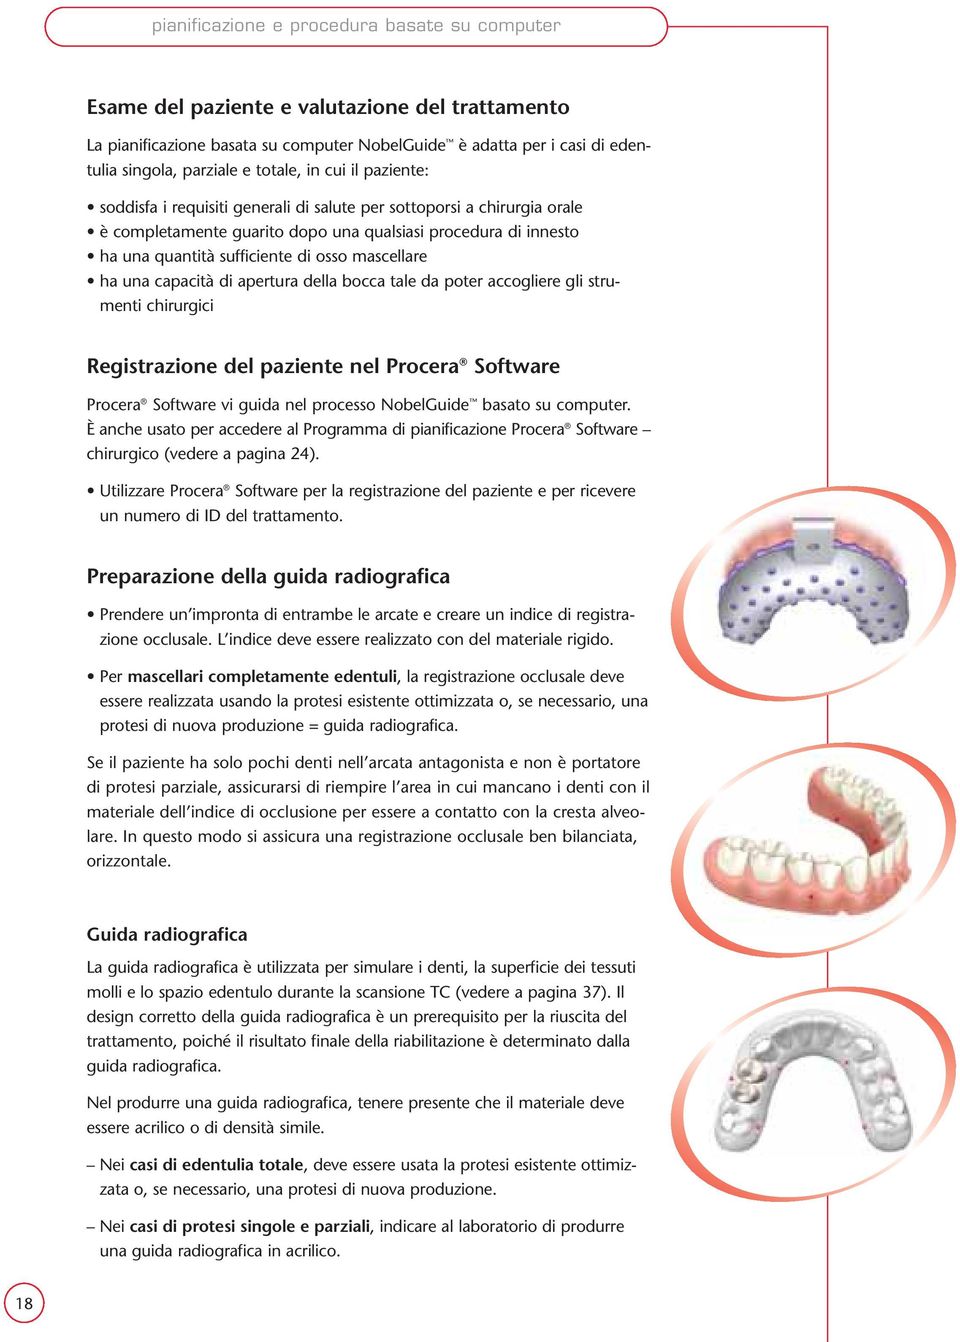 osso mascellare ha una capacità di apertura della bocca tale da poter accogliere gli strumenti chirurgici Registrazione del paziente nel Procera Software Procera Software vi guida nel processo